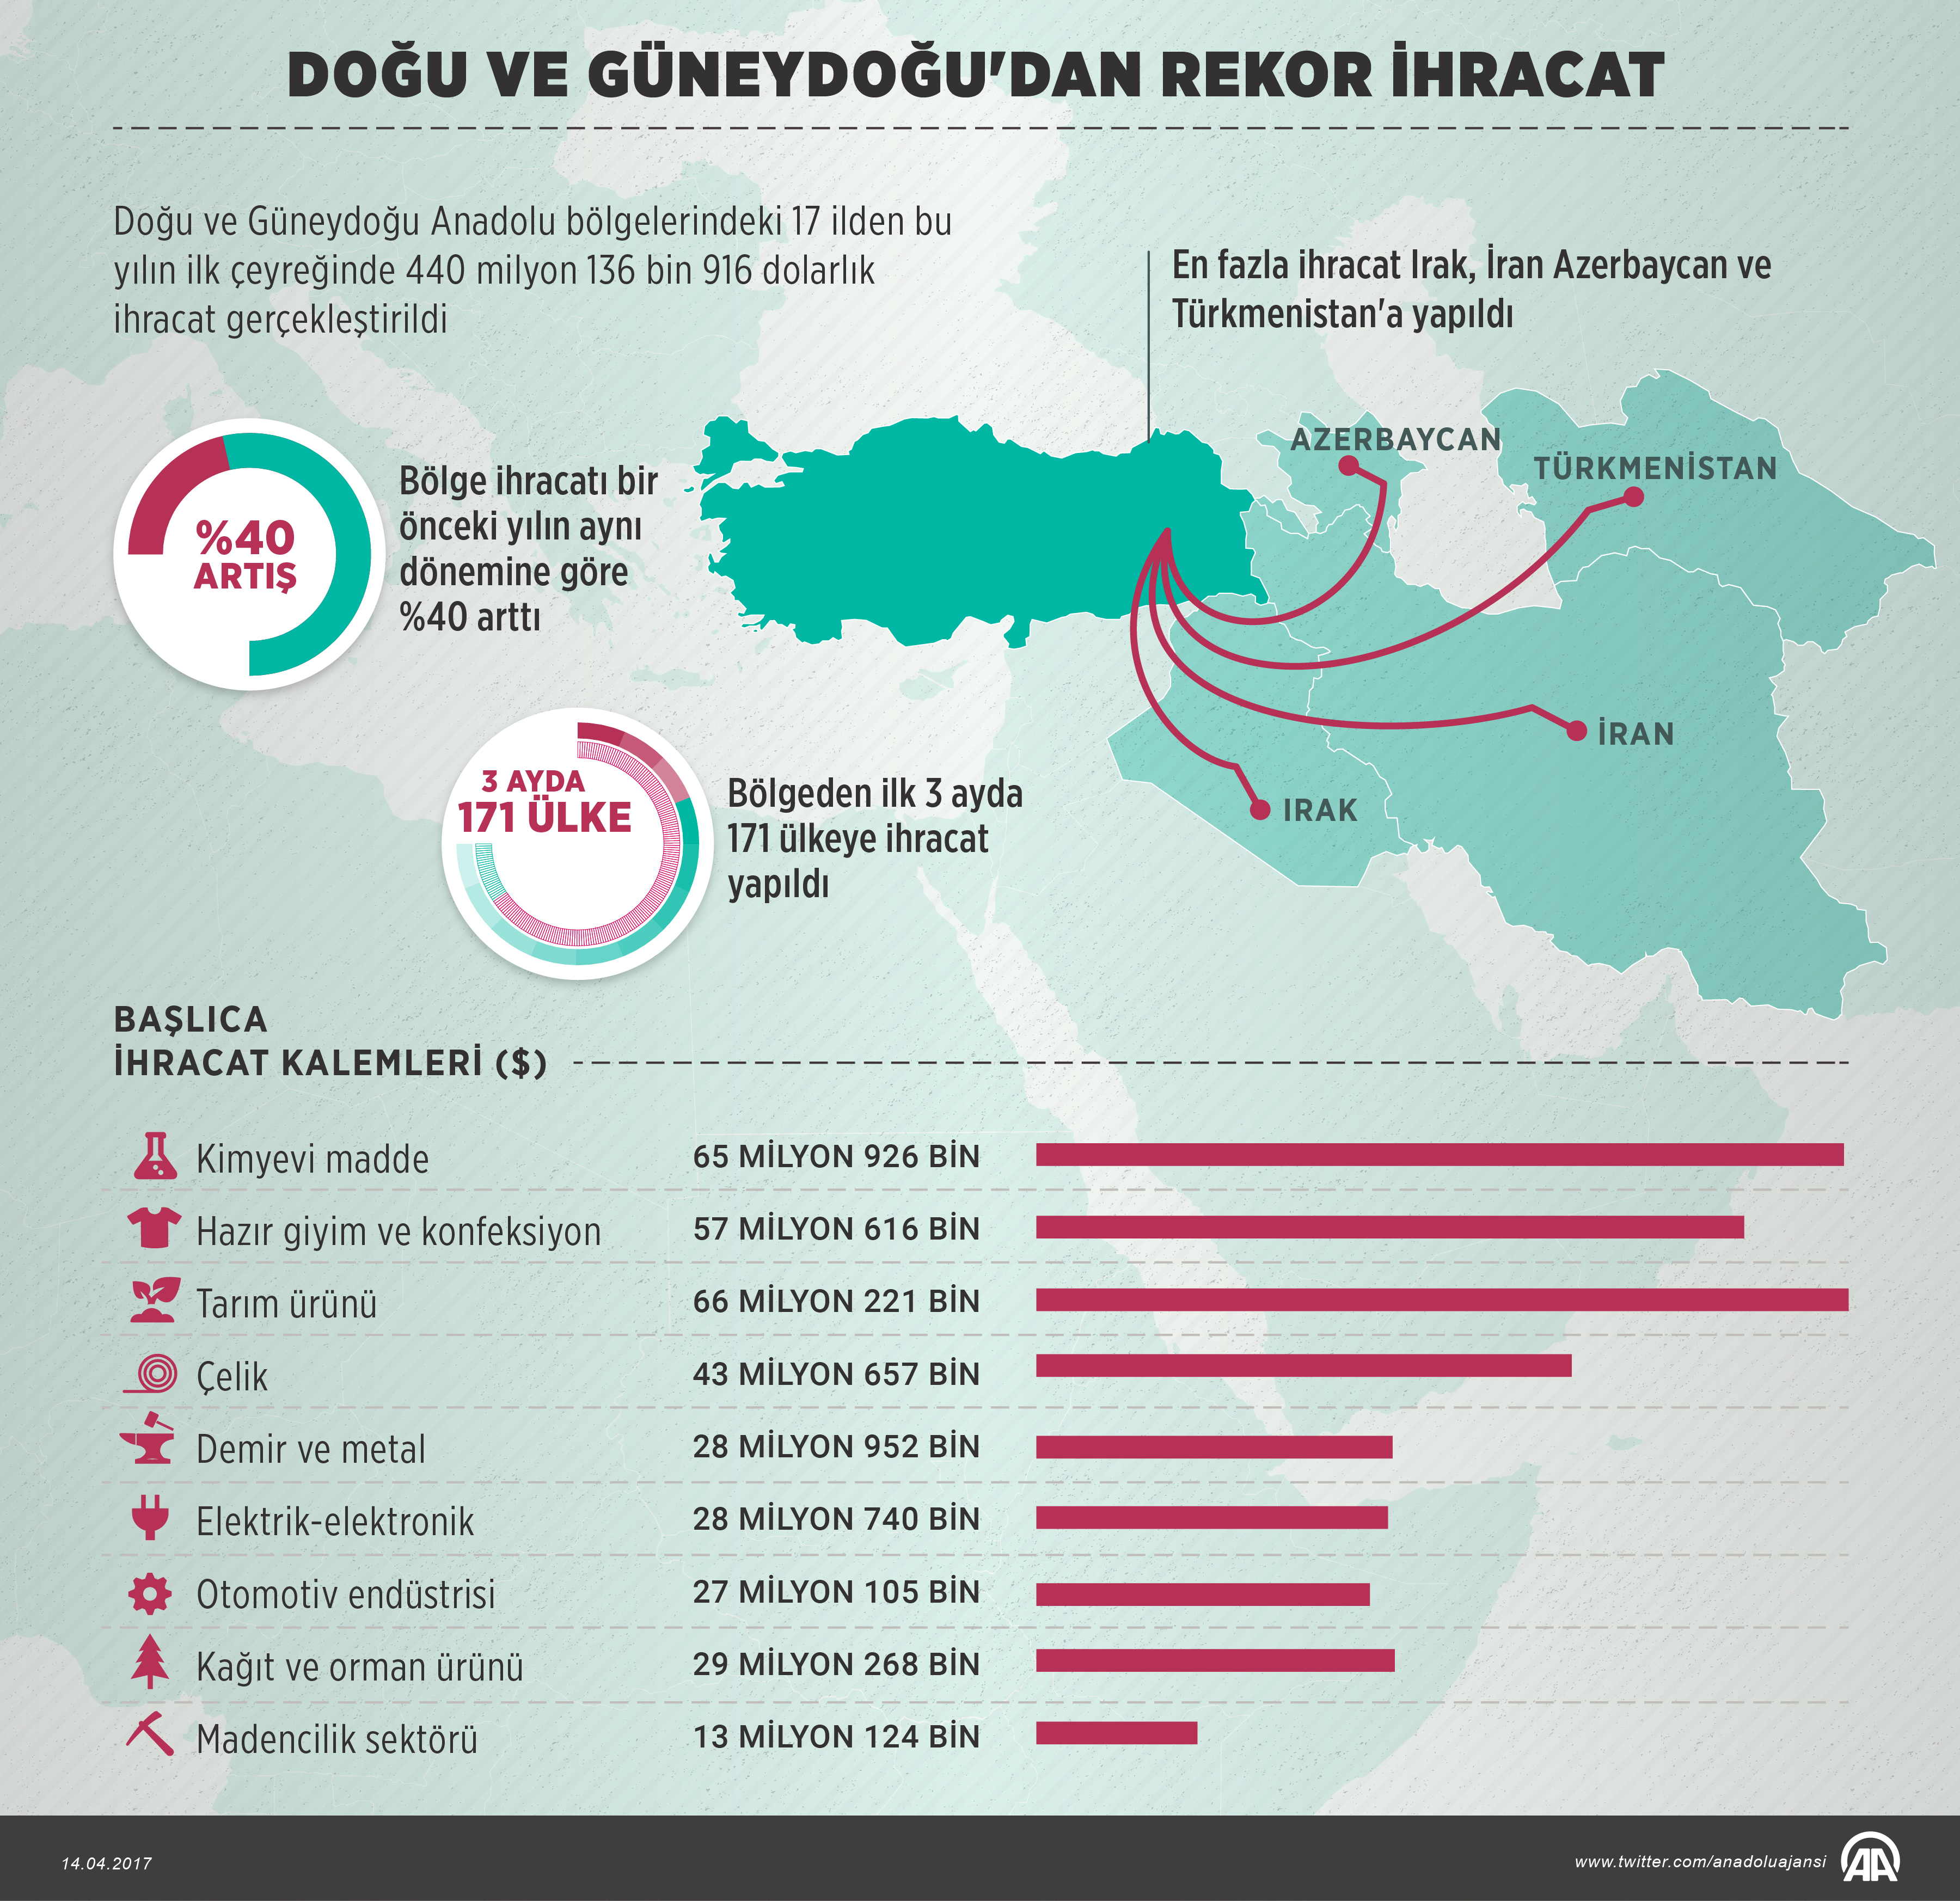 Doğu ve Güneydoğu Anadolu bölgelerinde ihracat rakamları